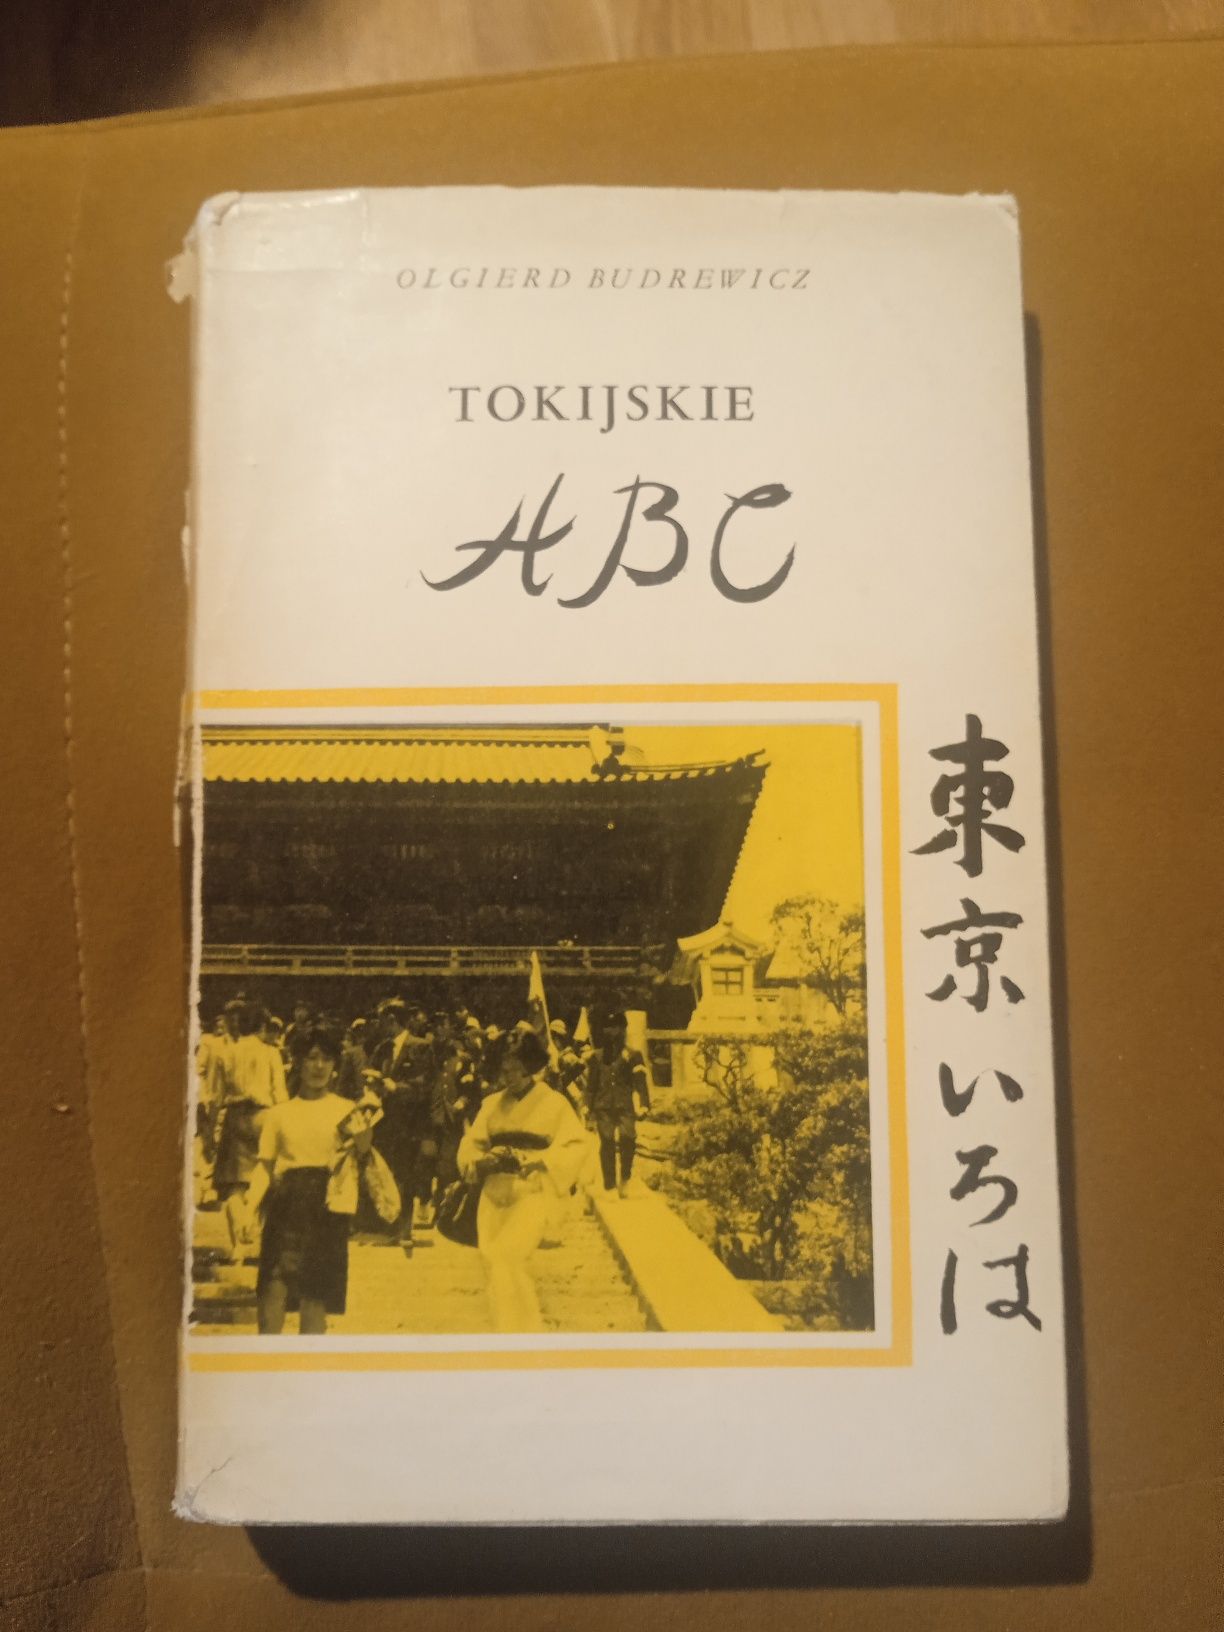 Tokijskie ABC, Budrewicz